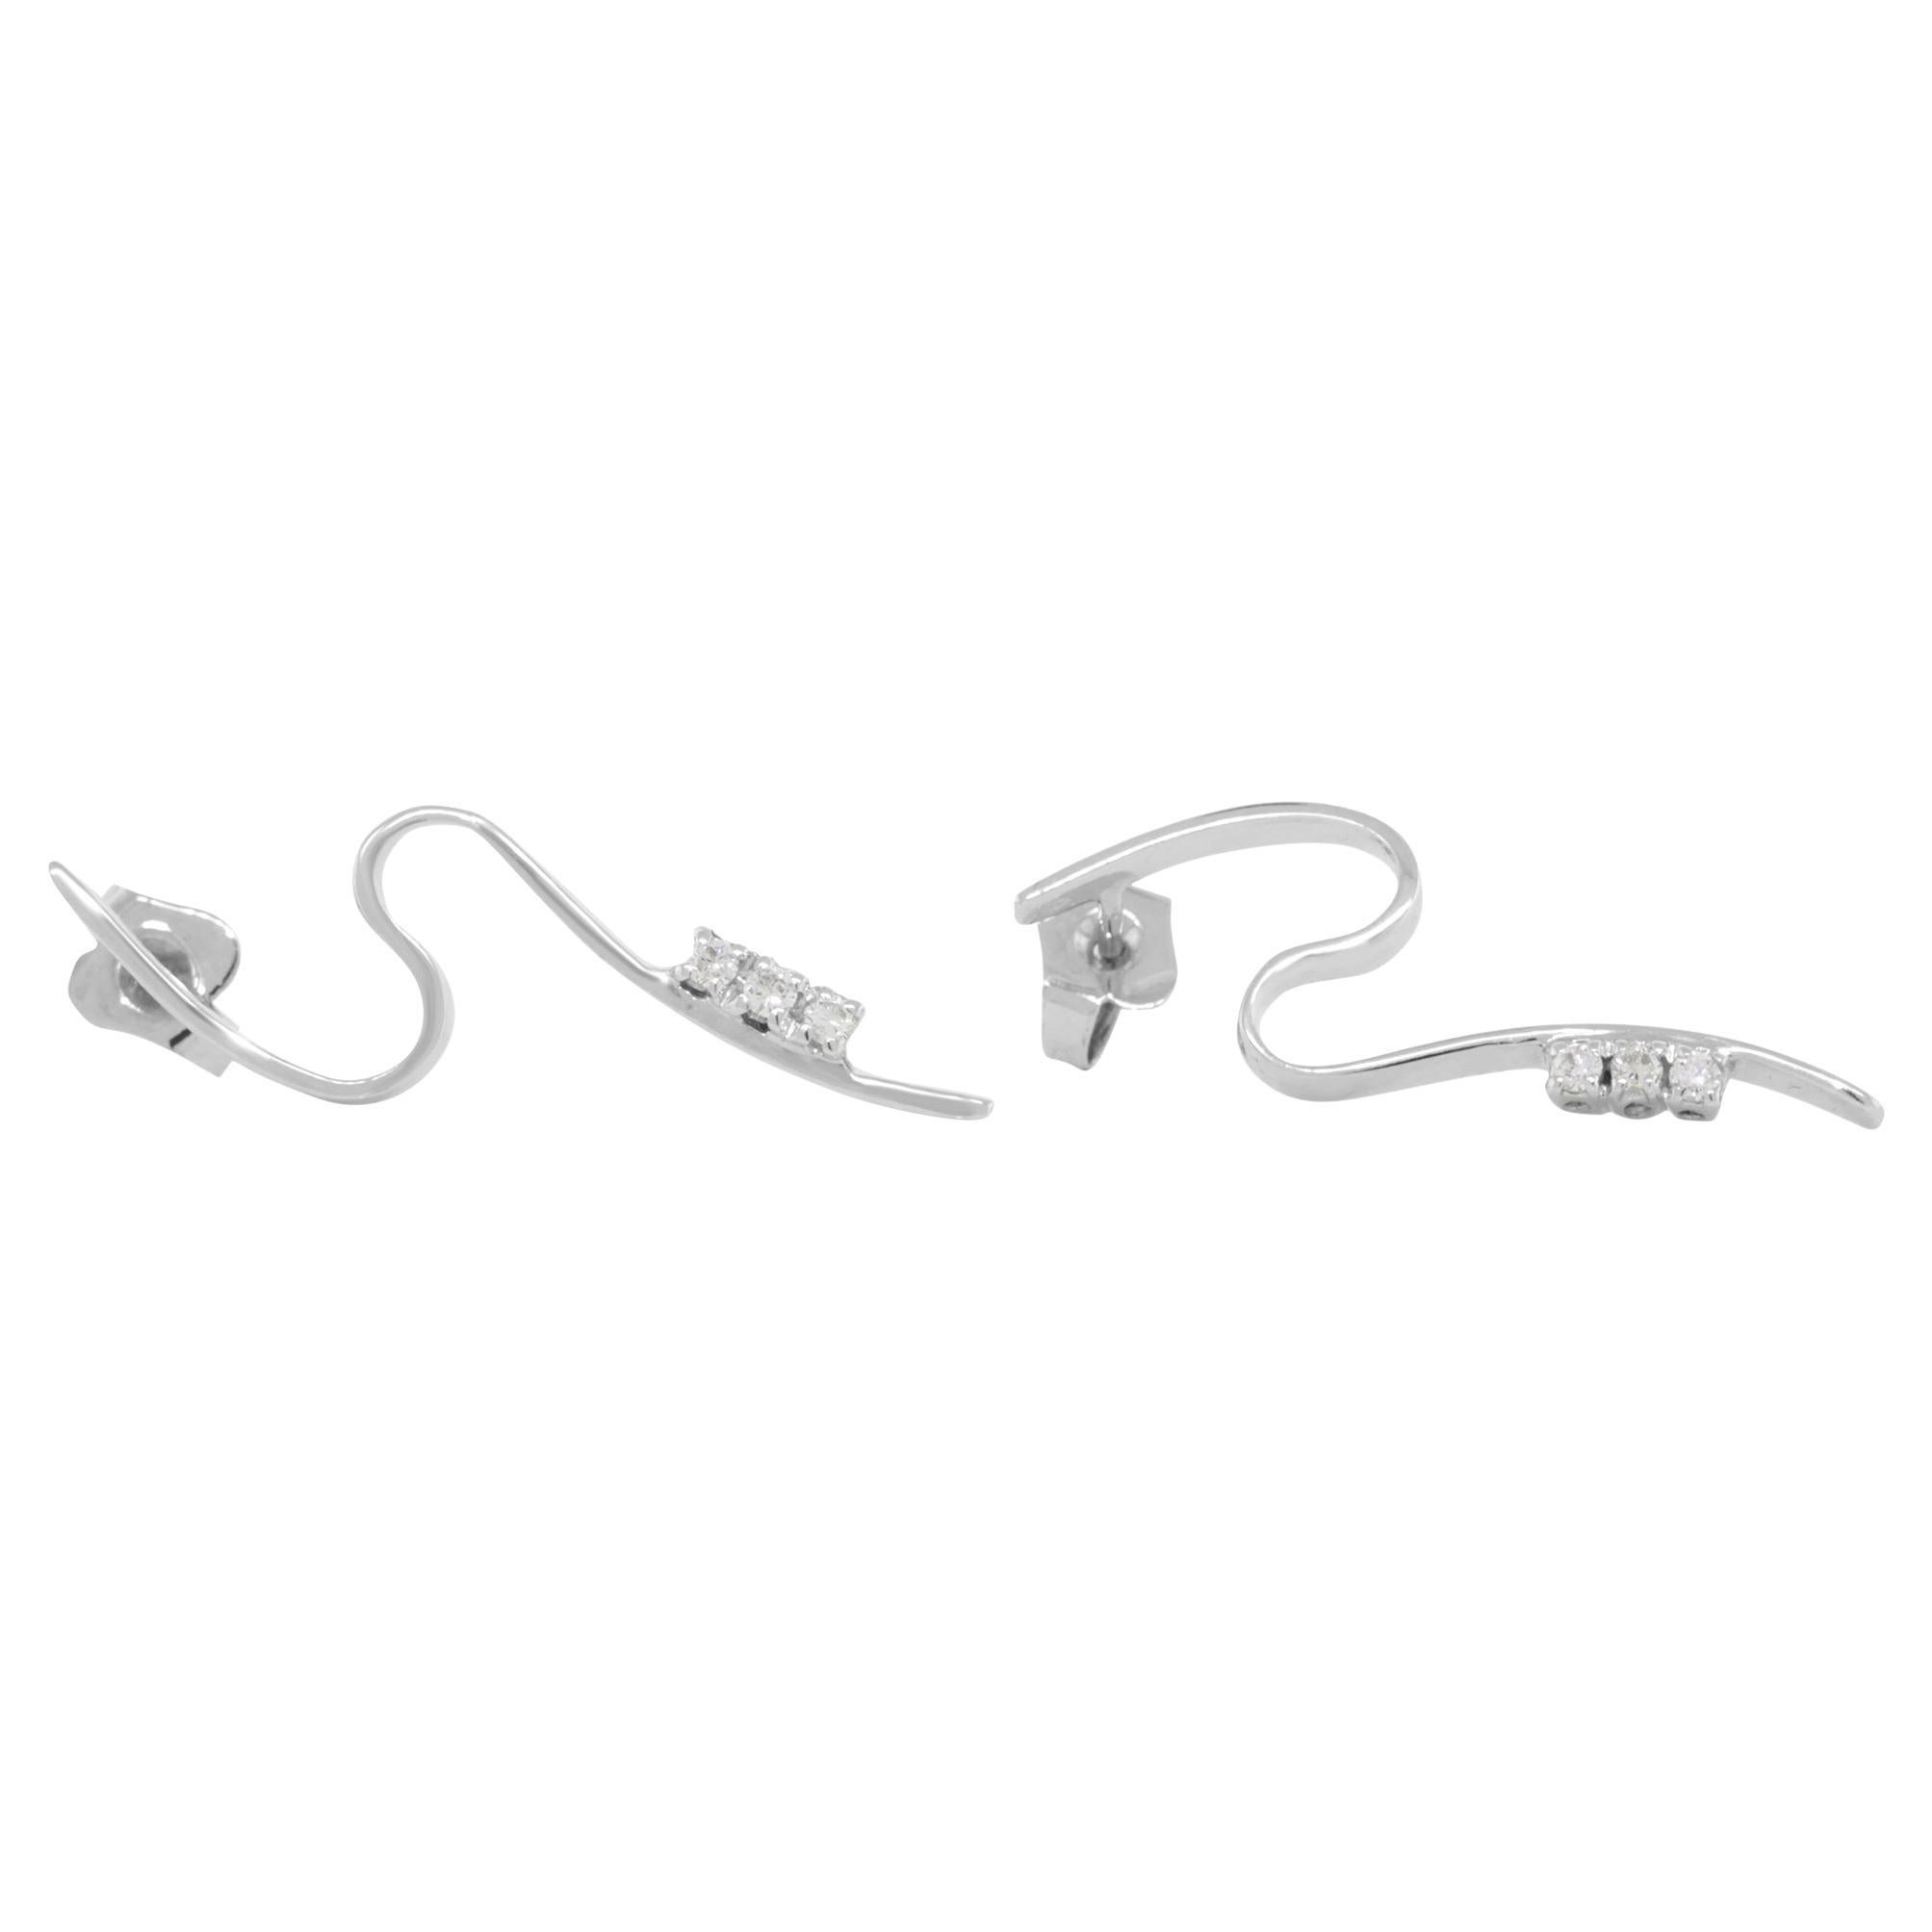 Rachel Koen Diamond Swirl Drop Earrings 18K White Gold 0.13 Cttw For Sale